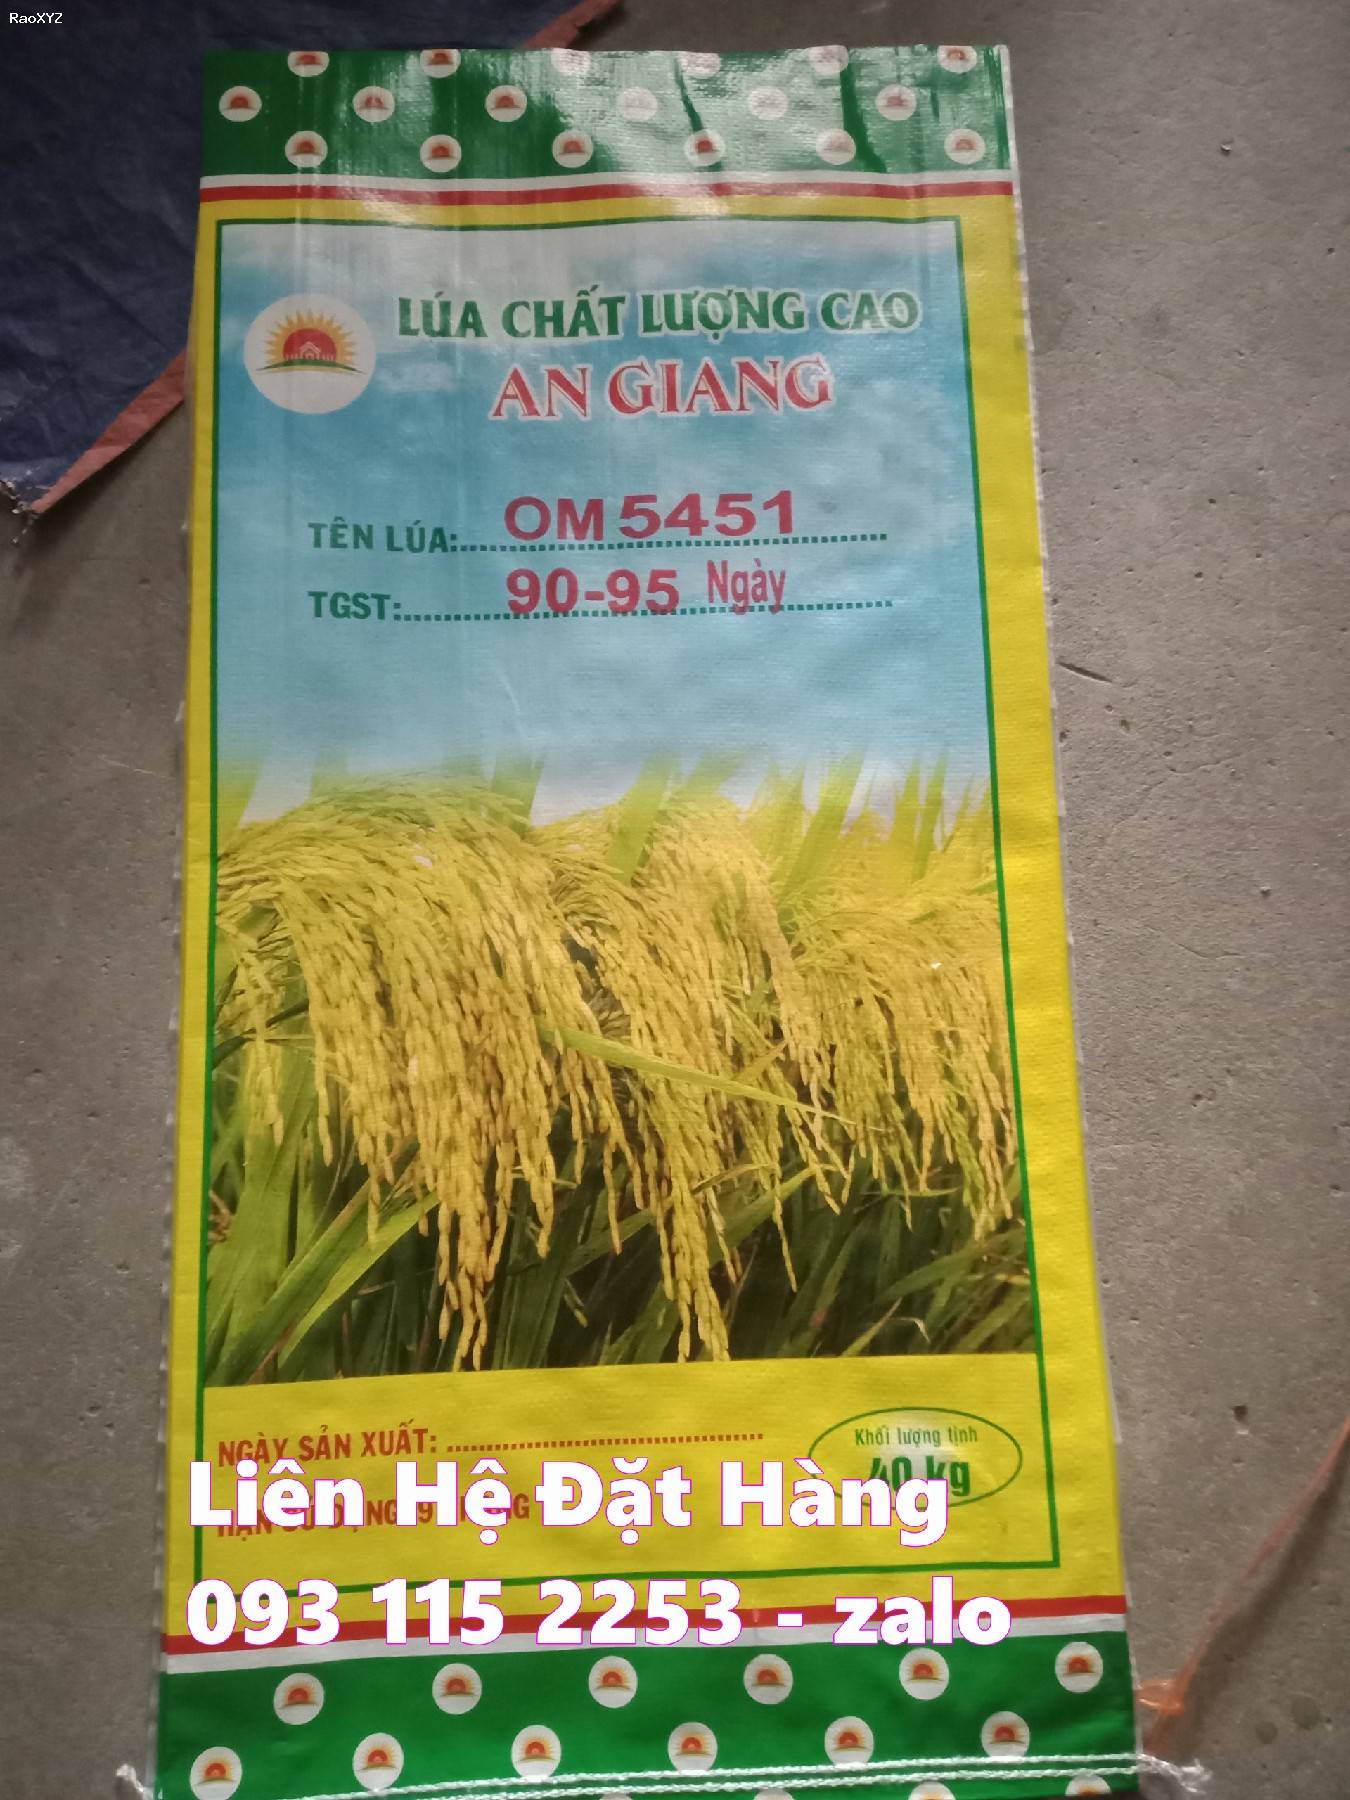 Những mẫu bao lúa giống hiện đang có sẵn ở kho giá rẻ phải chăng